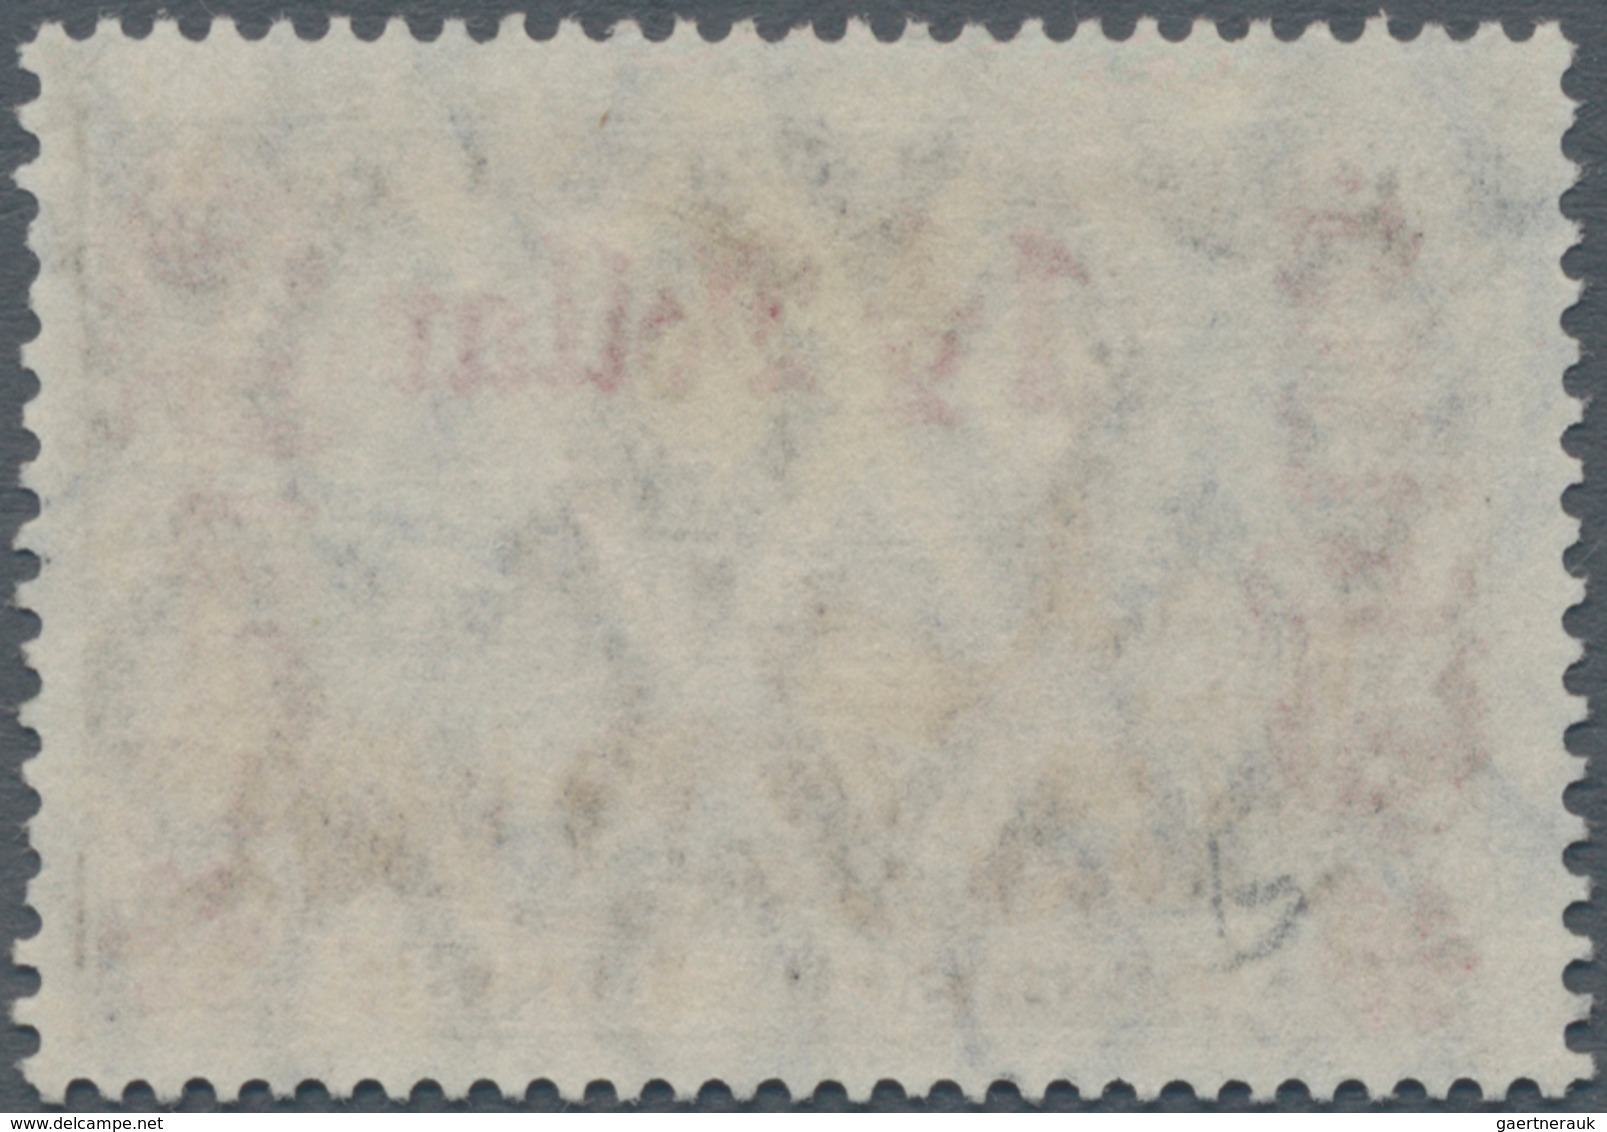 Deutsche Post In China: 1913, "1 1/2 Dollar Auf 3 Mark" Friedensdruck, 26:17 Zähnungslöcher, Schwarz - China (offices)